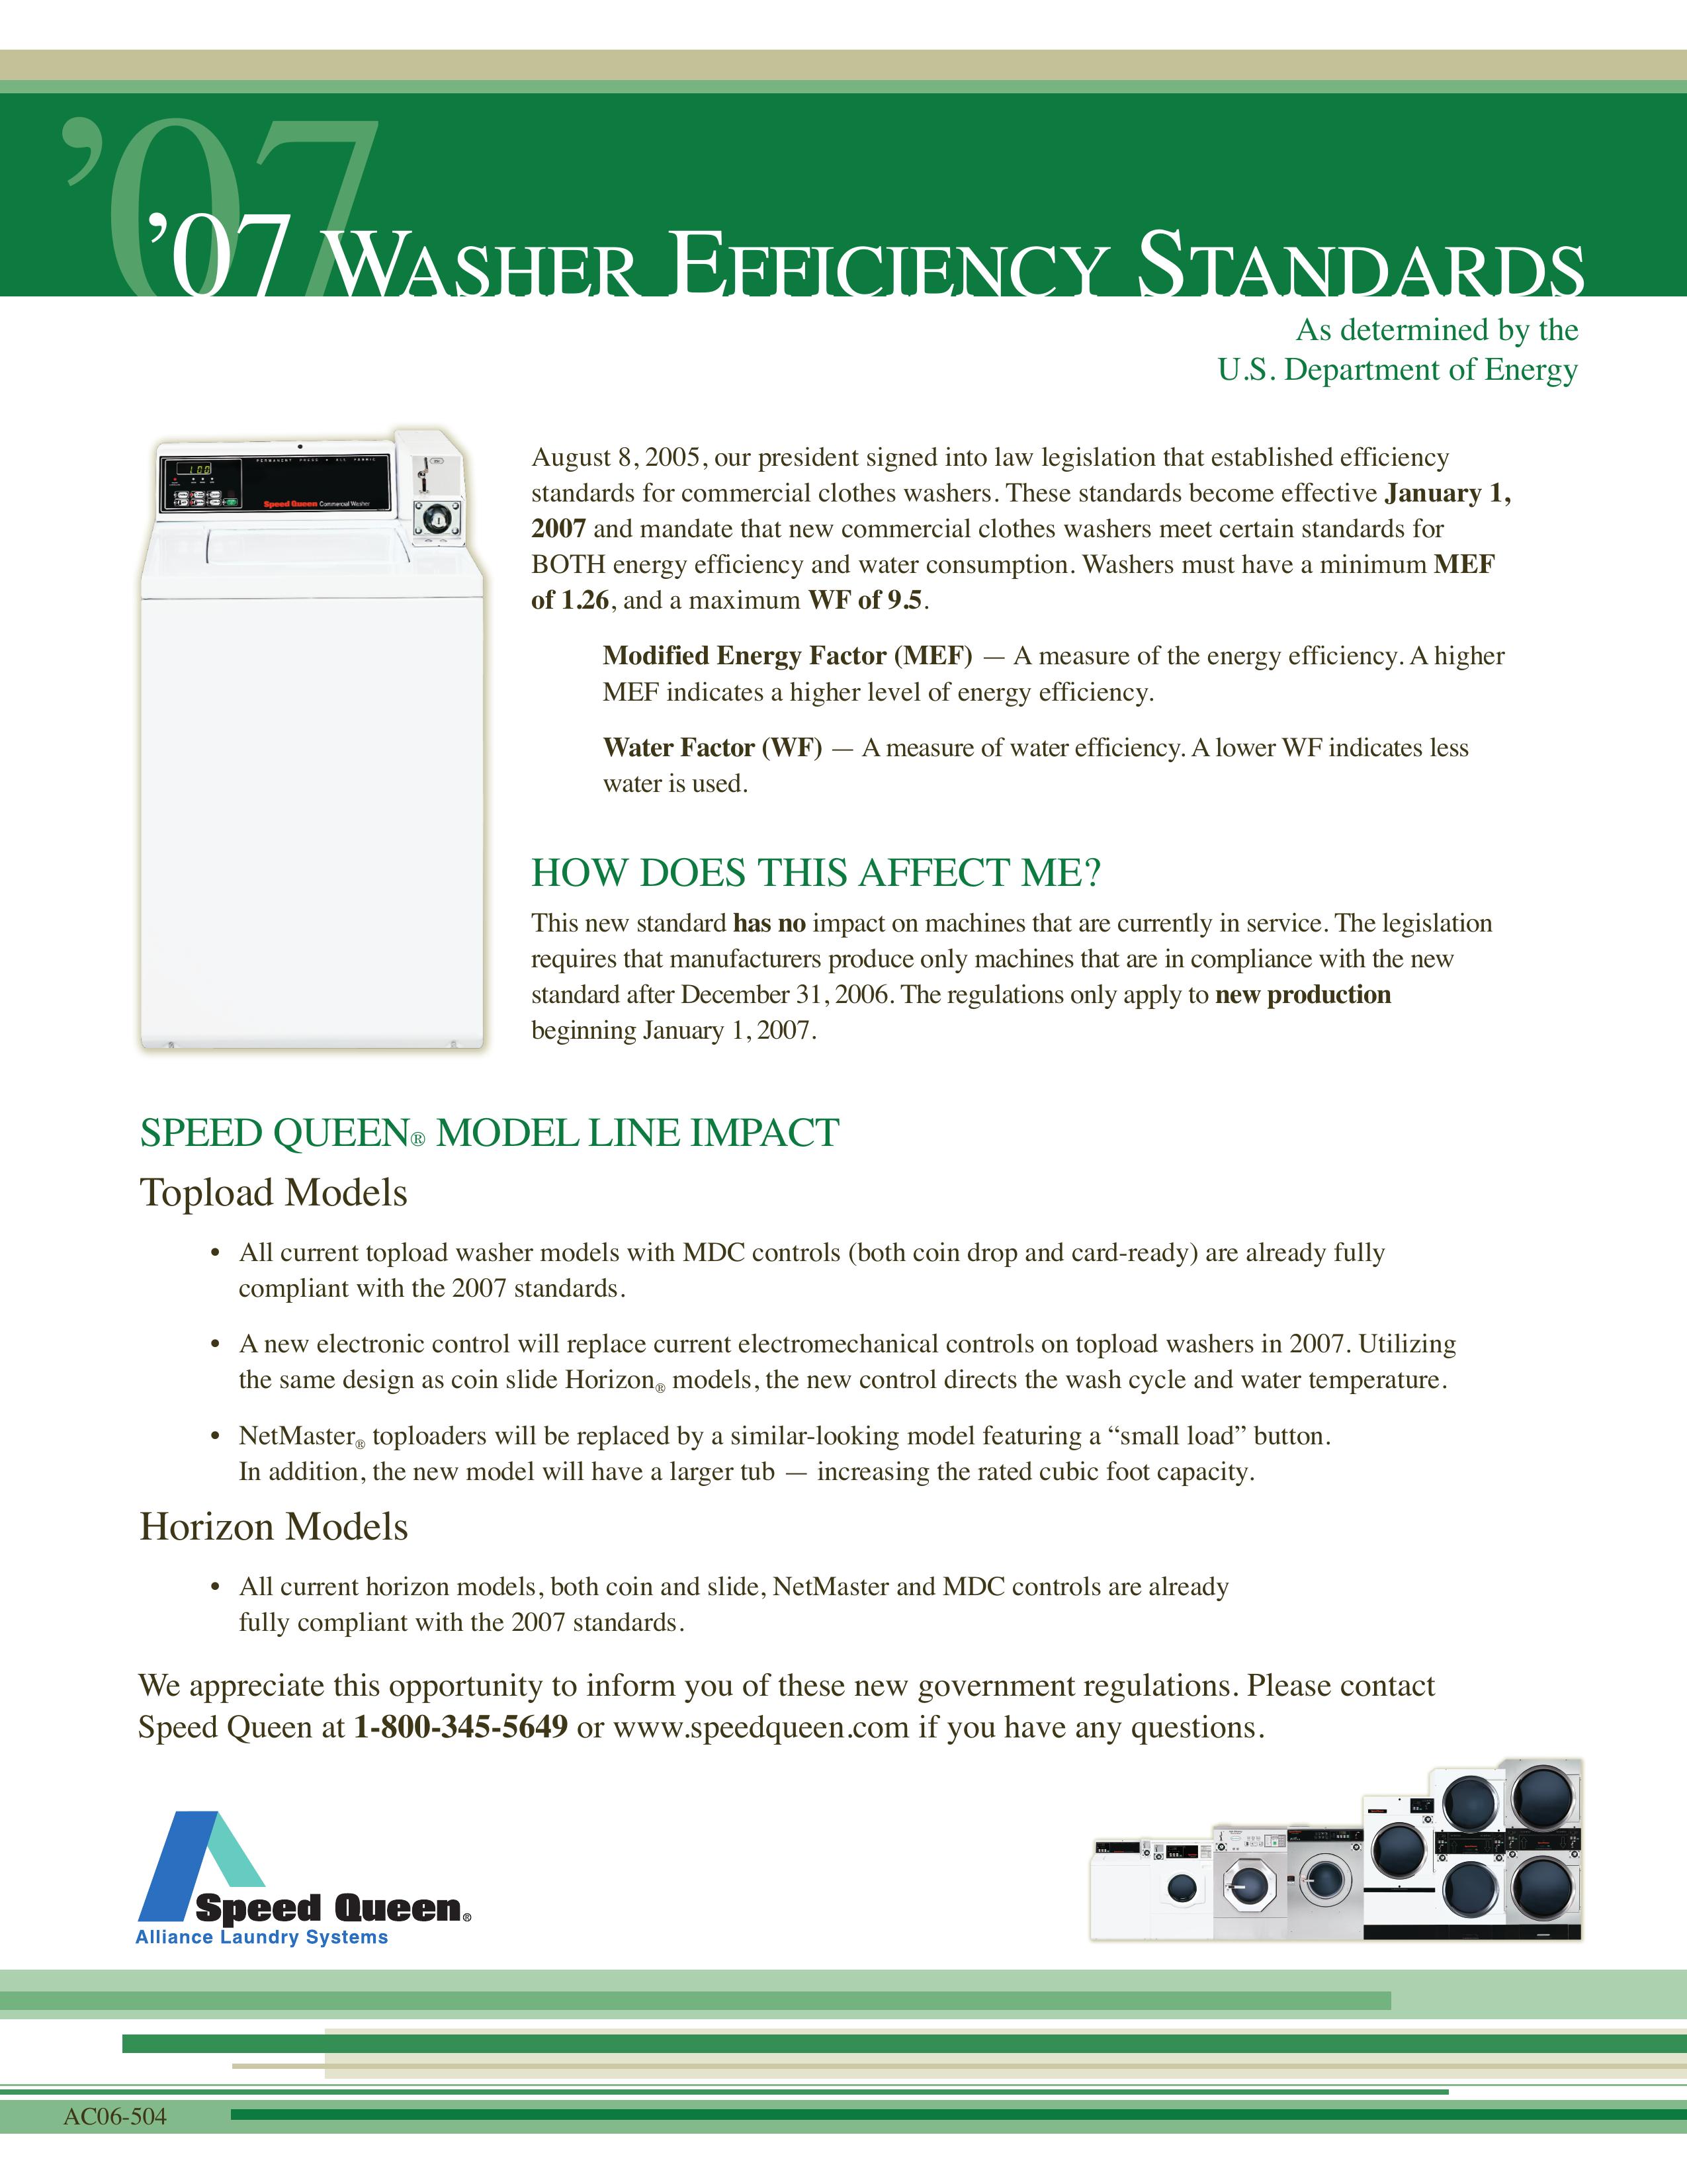 Speed Queen Horizon Washer/Dryer User Manual